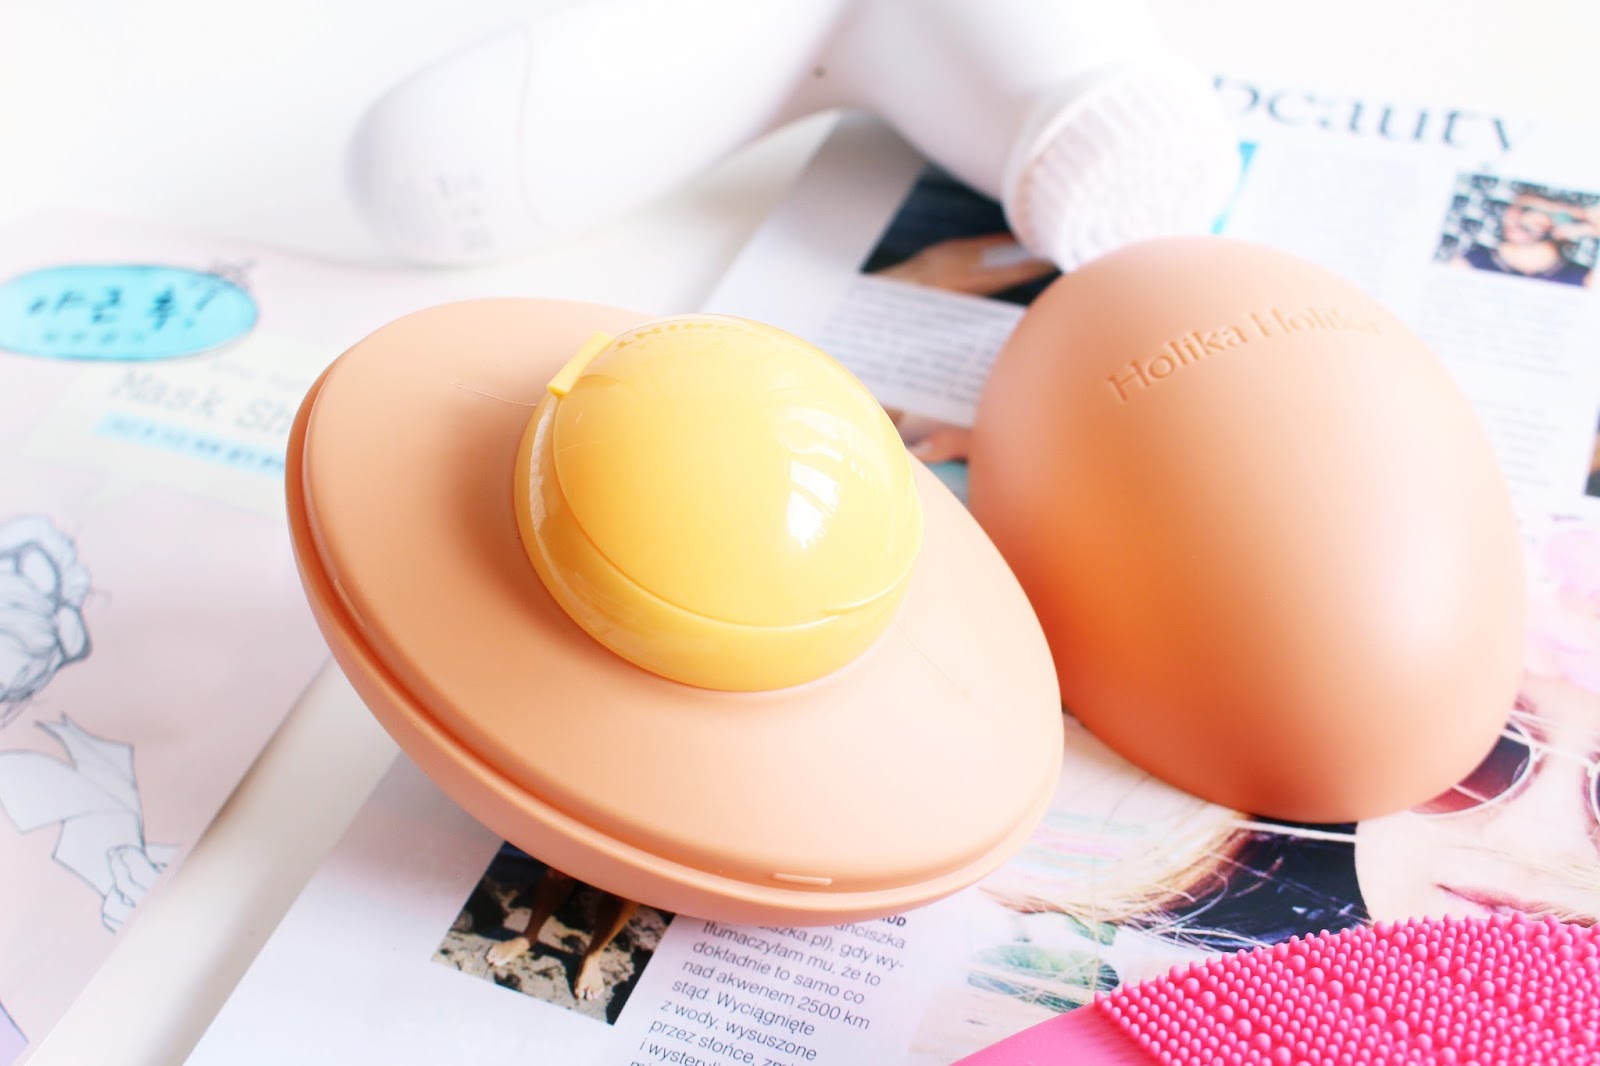 Holika Holika Sleek Eggs for Face Cleansing. 